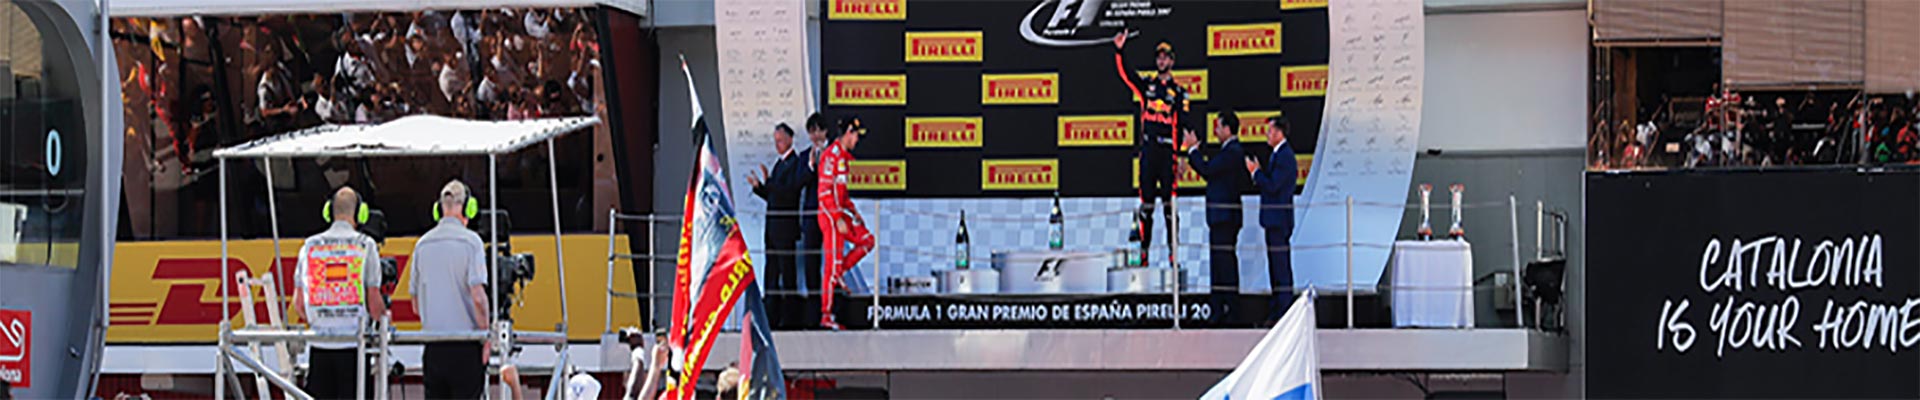 Pacote de Viagem – GP da ESPANHA